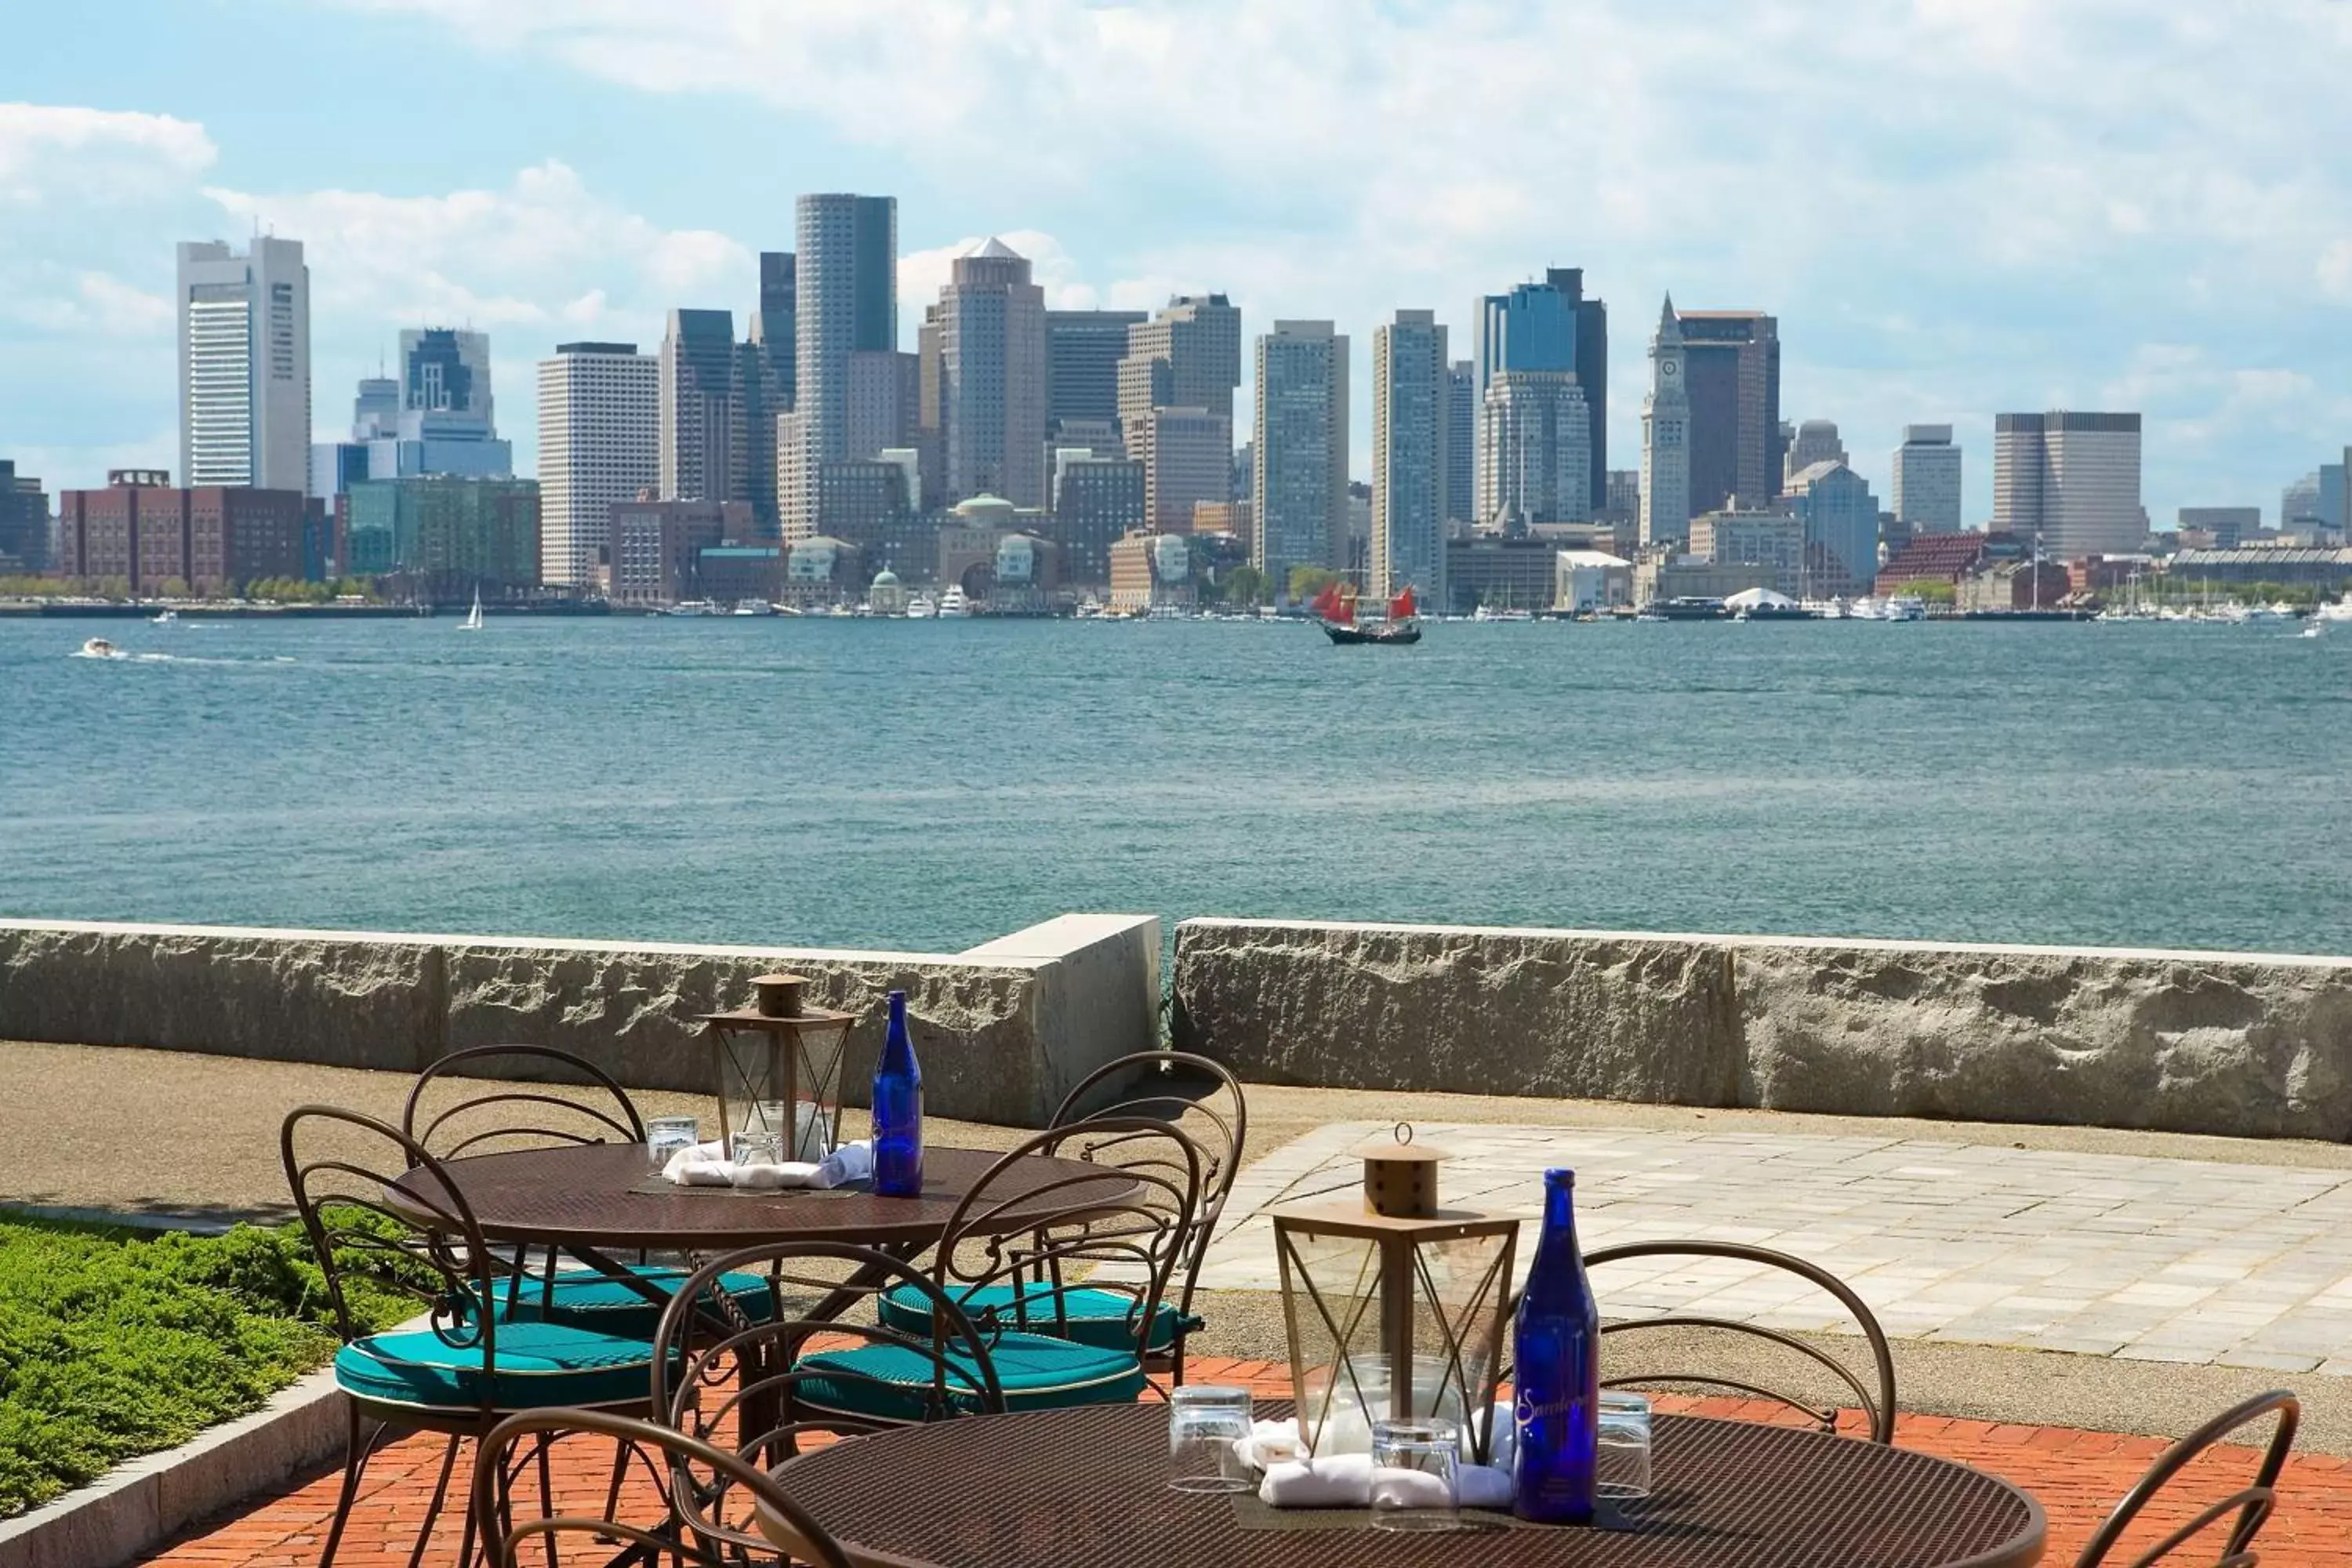 Restaurant/places to eat in Hyatt Regency Boston Harbor